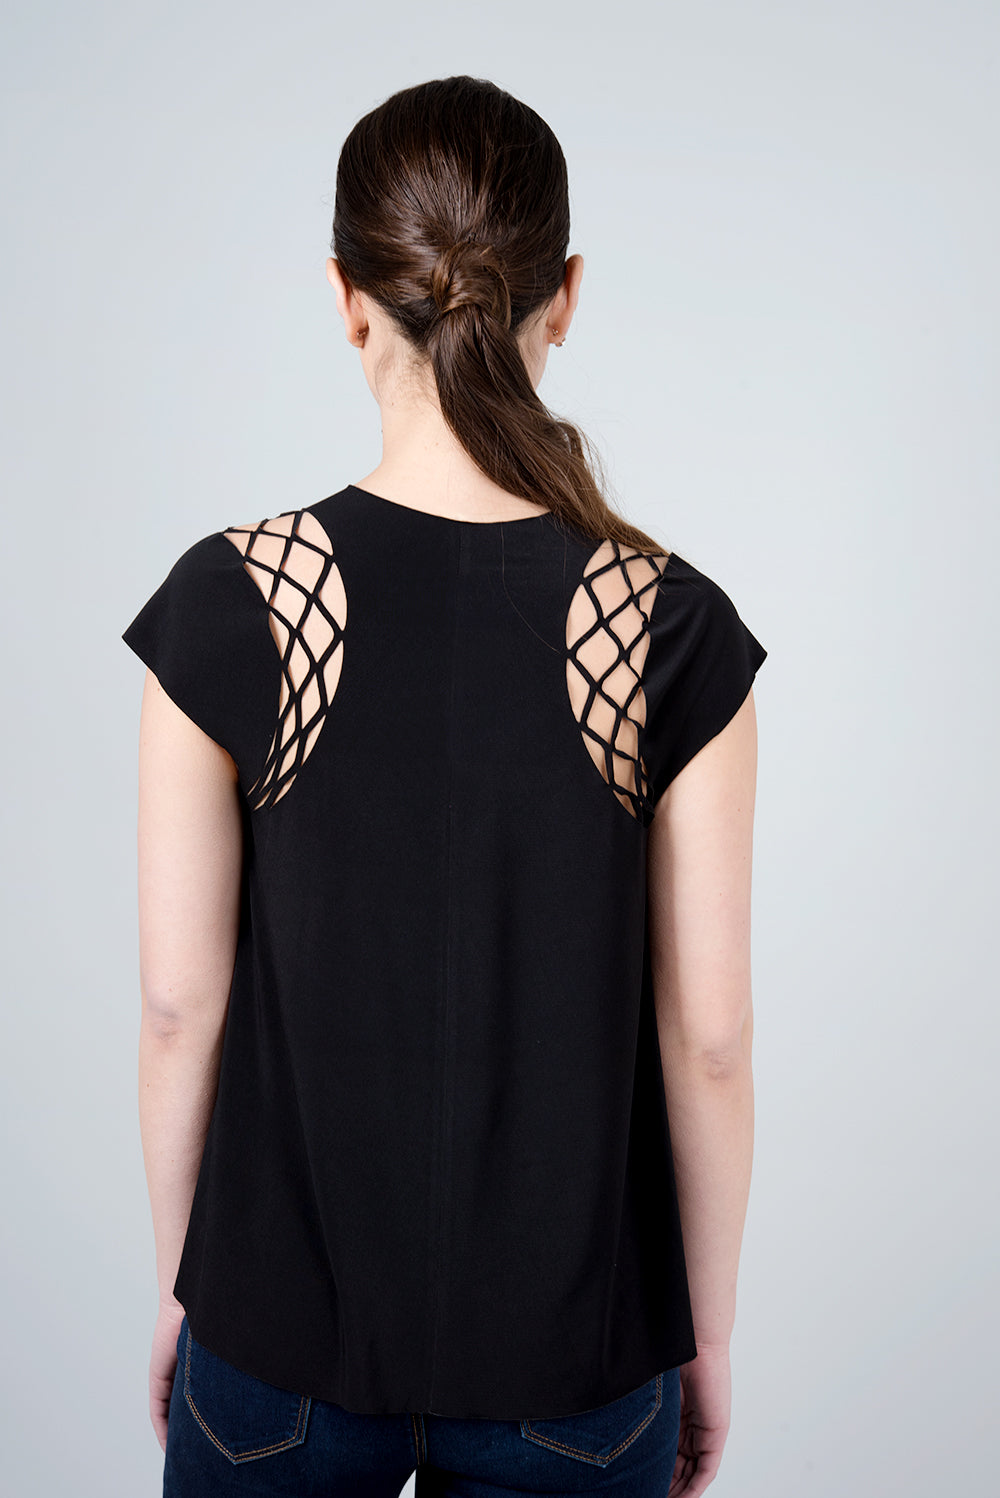 חולצת גמא - חולצה שחורה עם חיתוך מיוחד בכתף